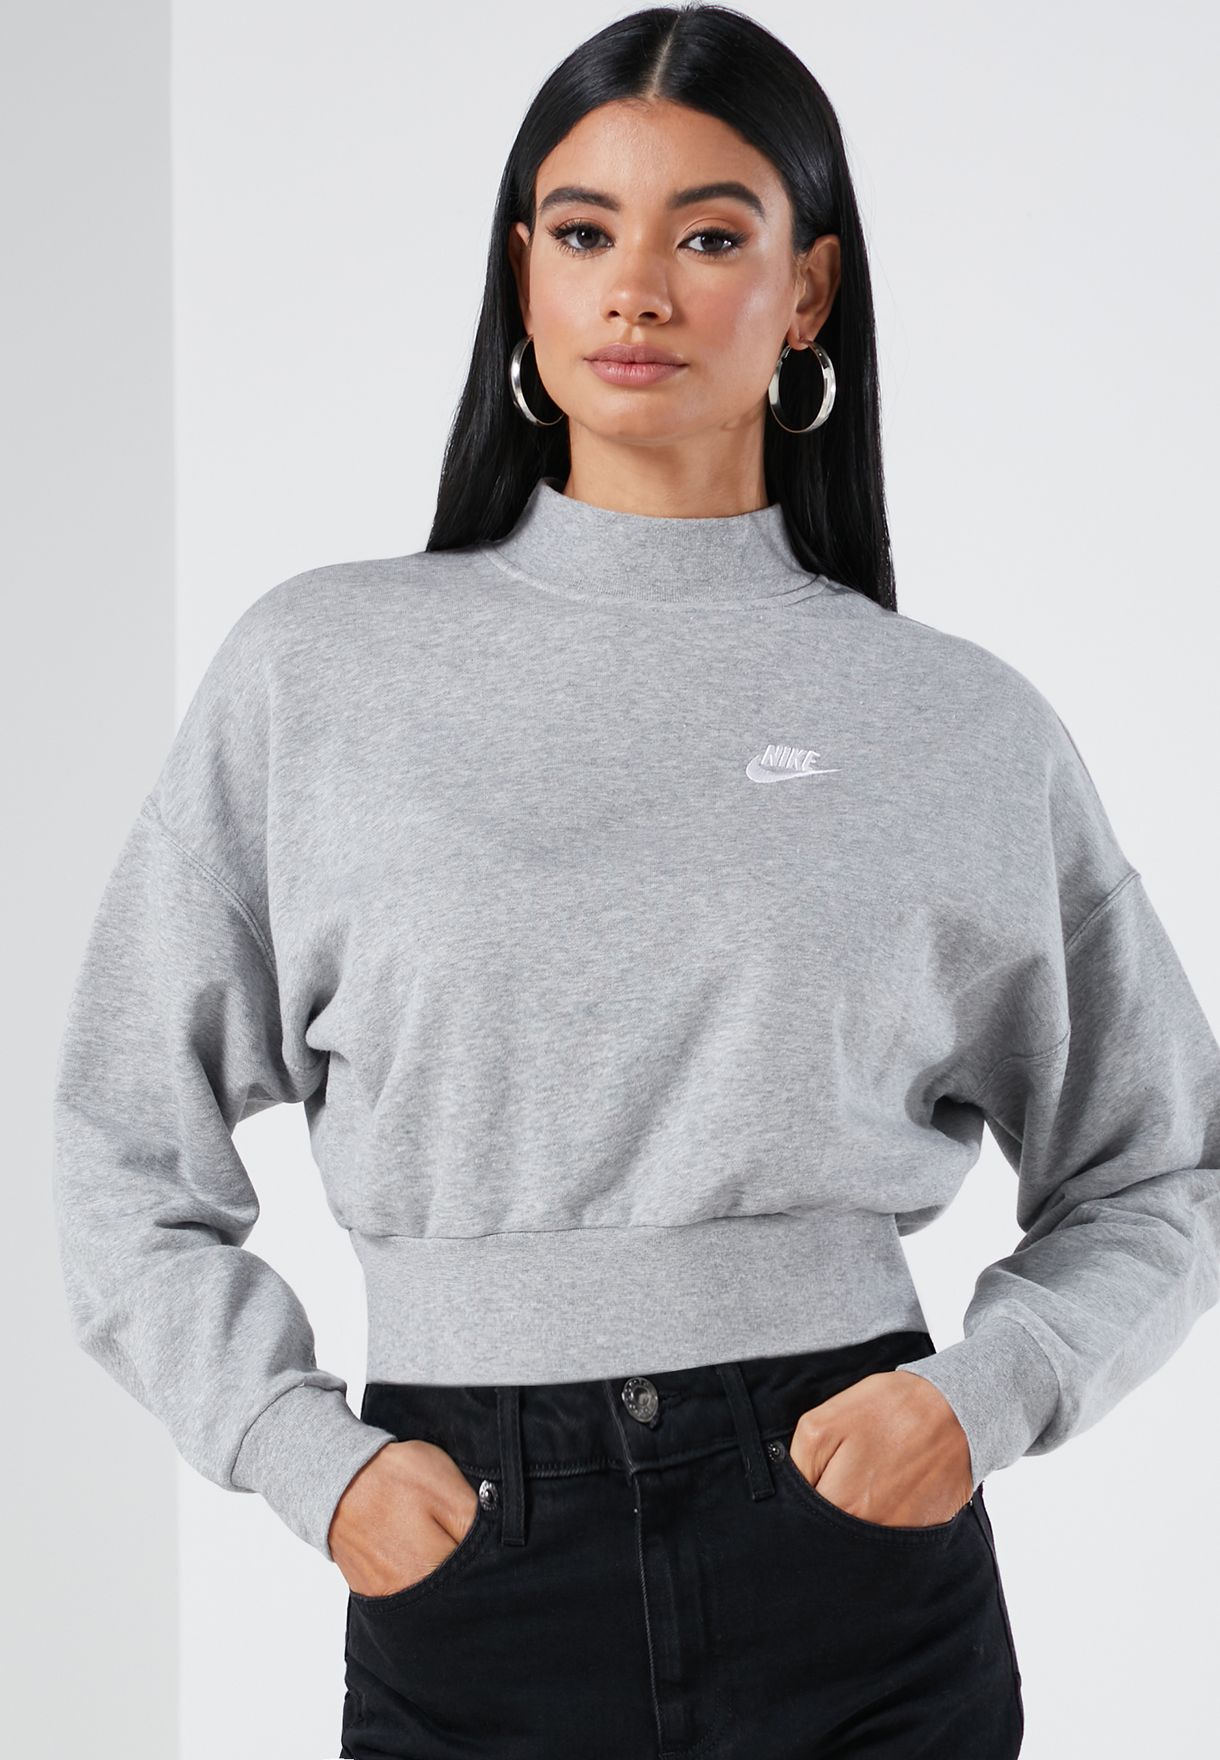 women's nike mock neck sweatshirt